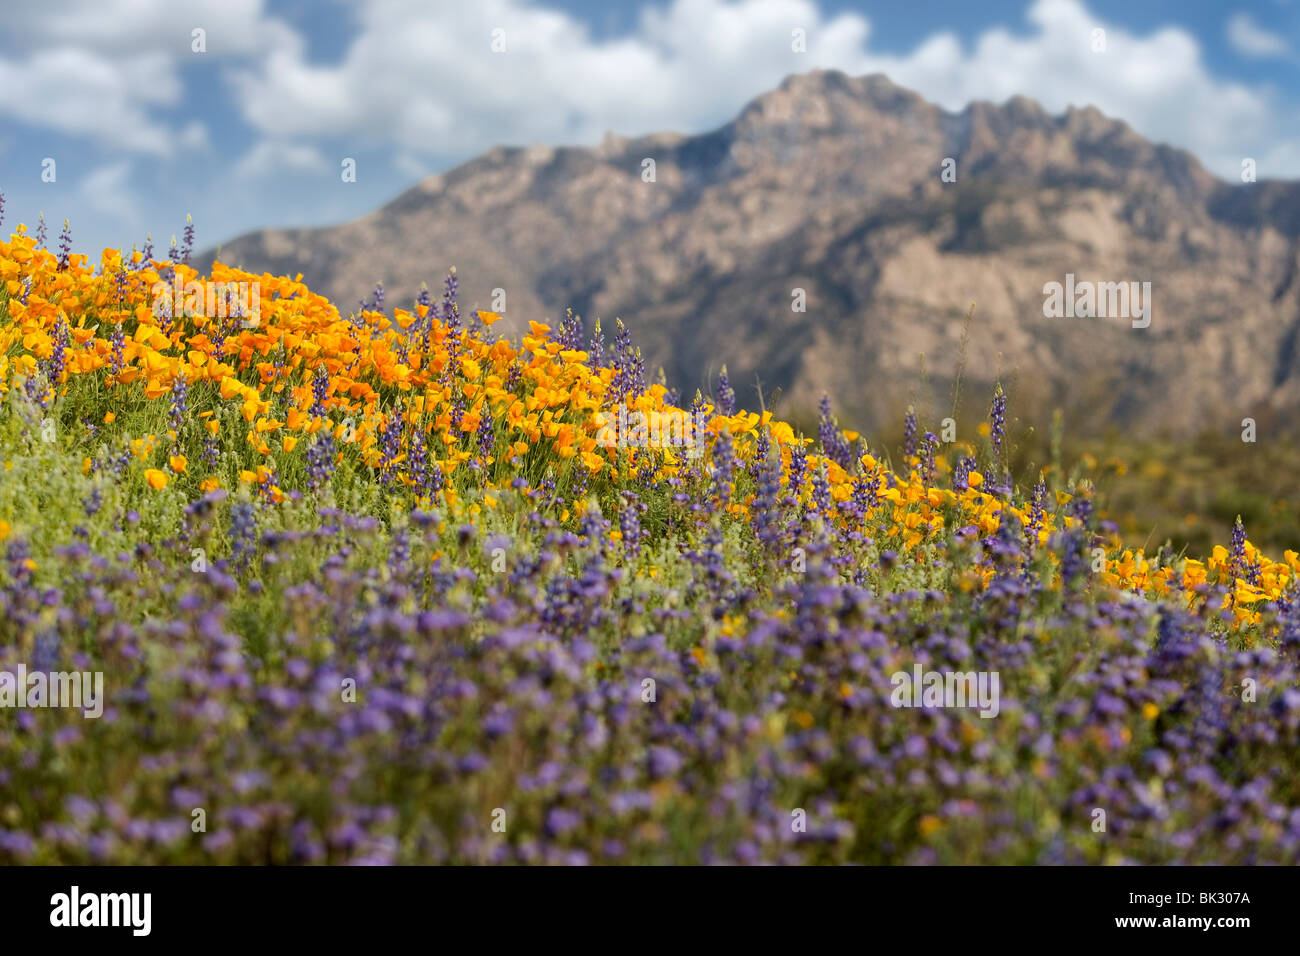 Un gran campo de amapolas, naranja y amarillo, púrpura altramuz, y otras flores silvestres en el Parque Estatal de Catalina, cerca de Tucson, Arizona. Foto de stock